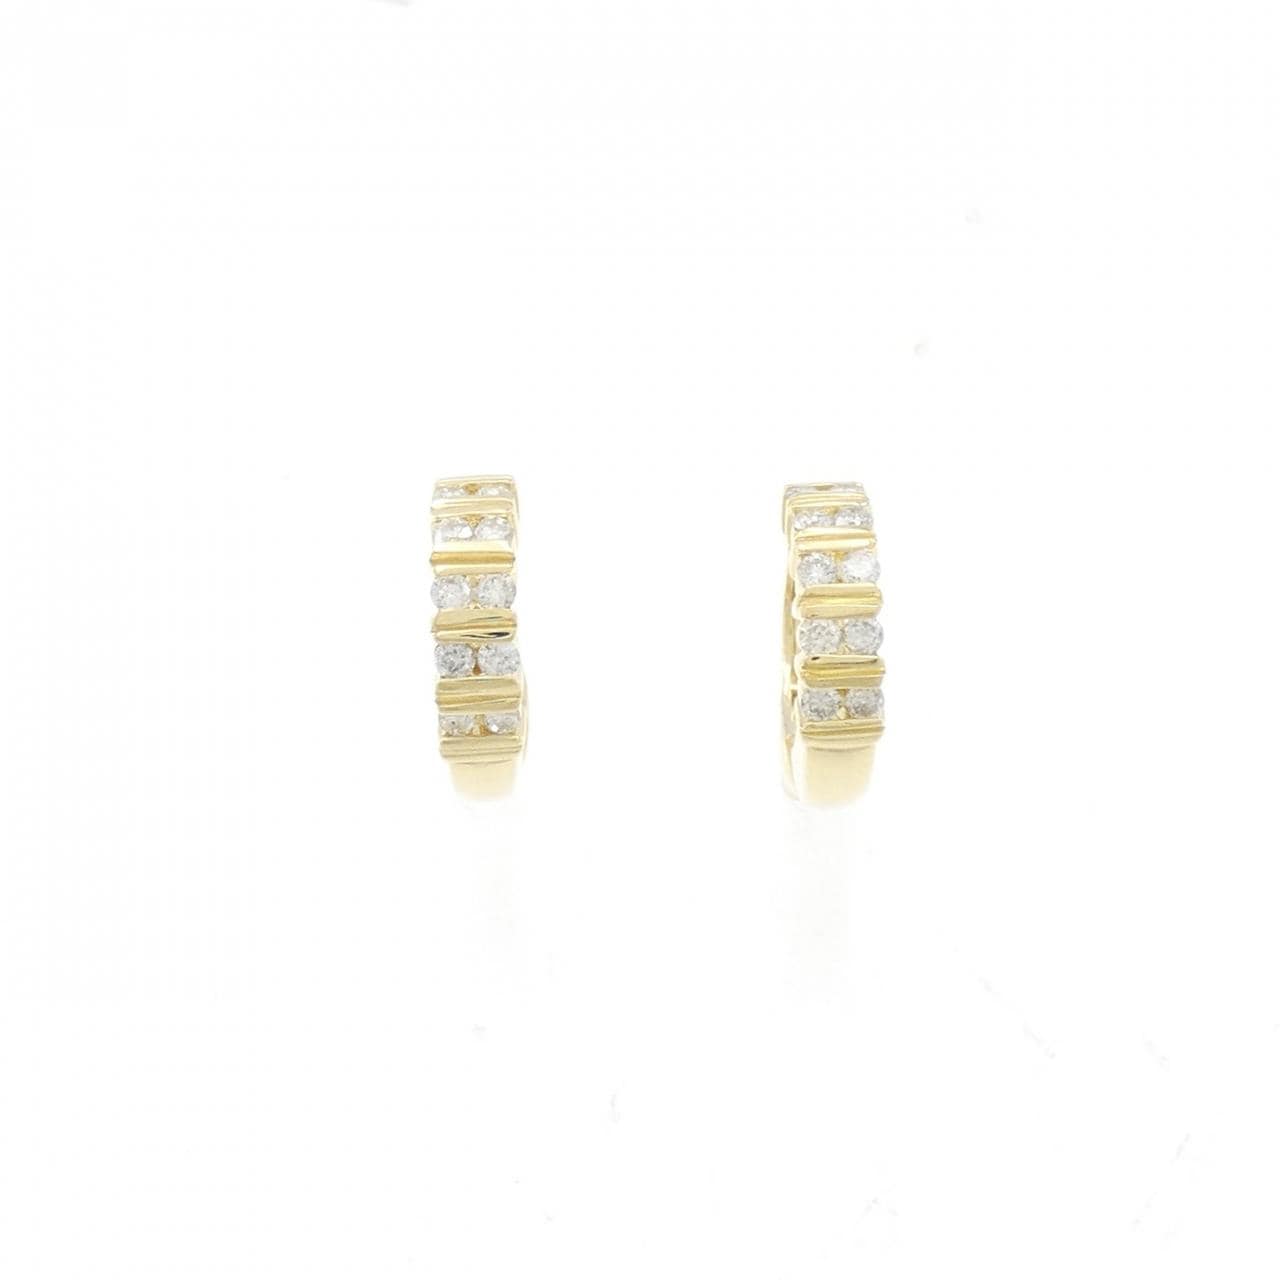 K18YG Diamond Earrings 0.28CT